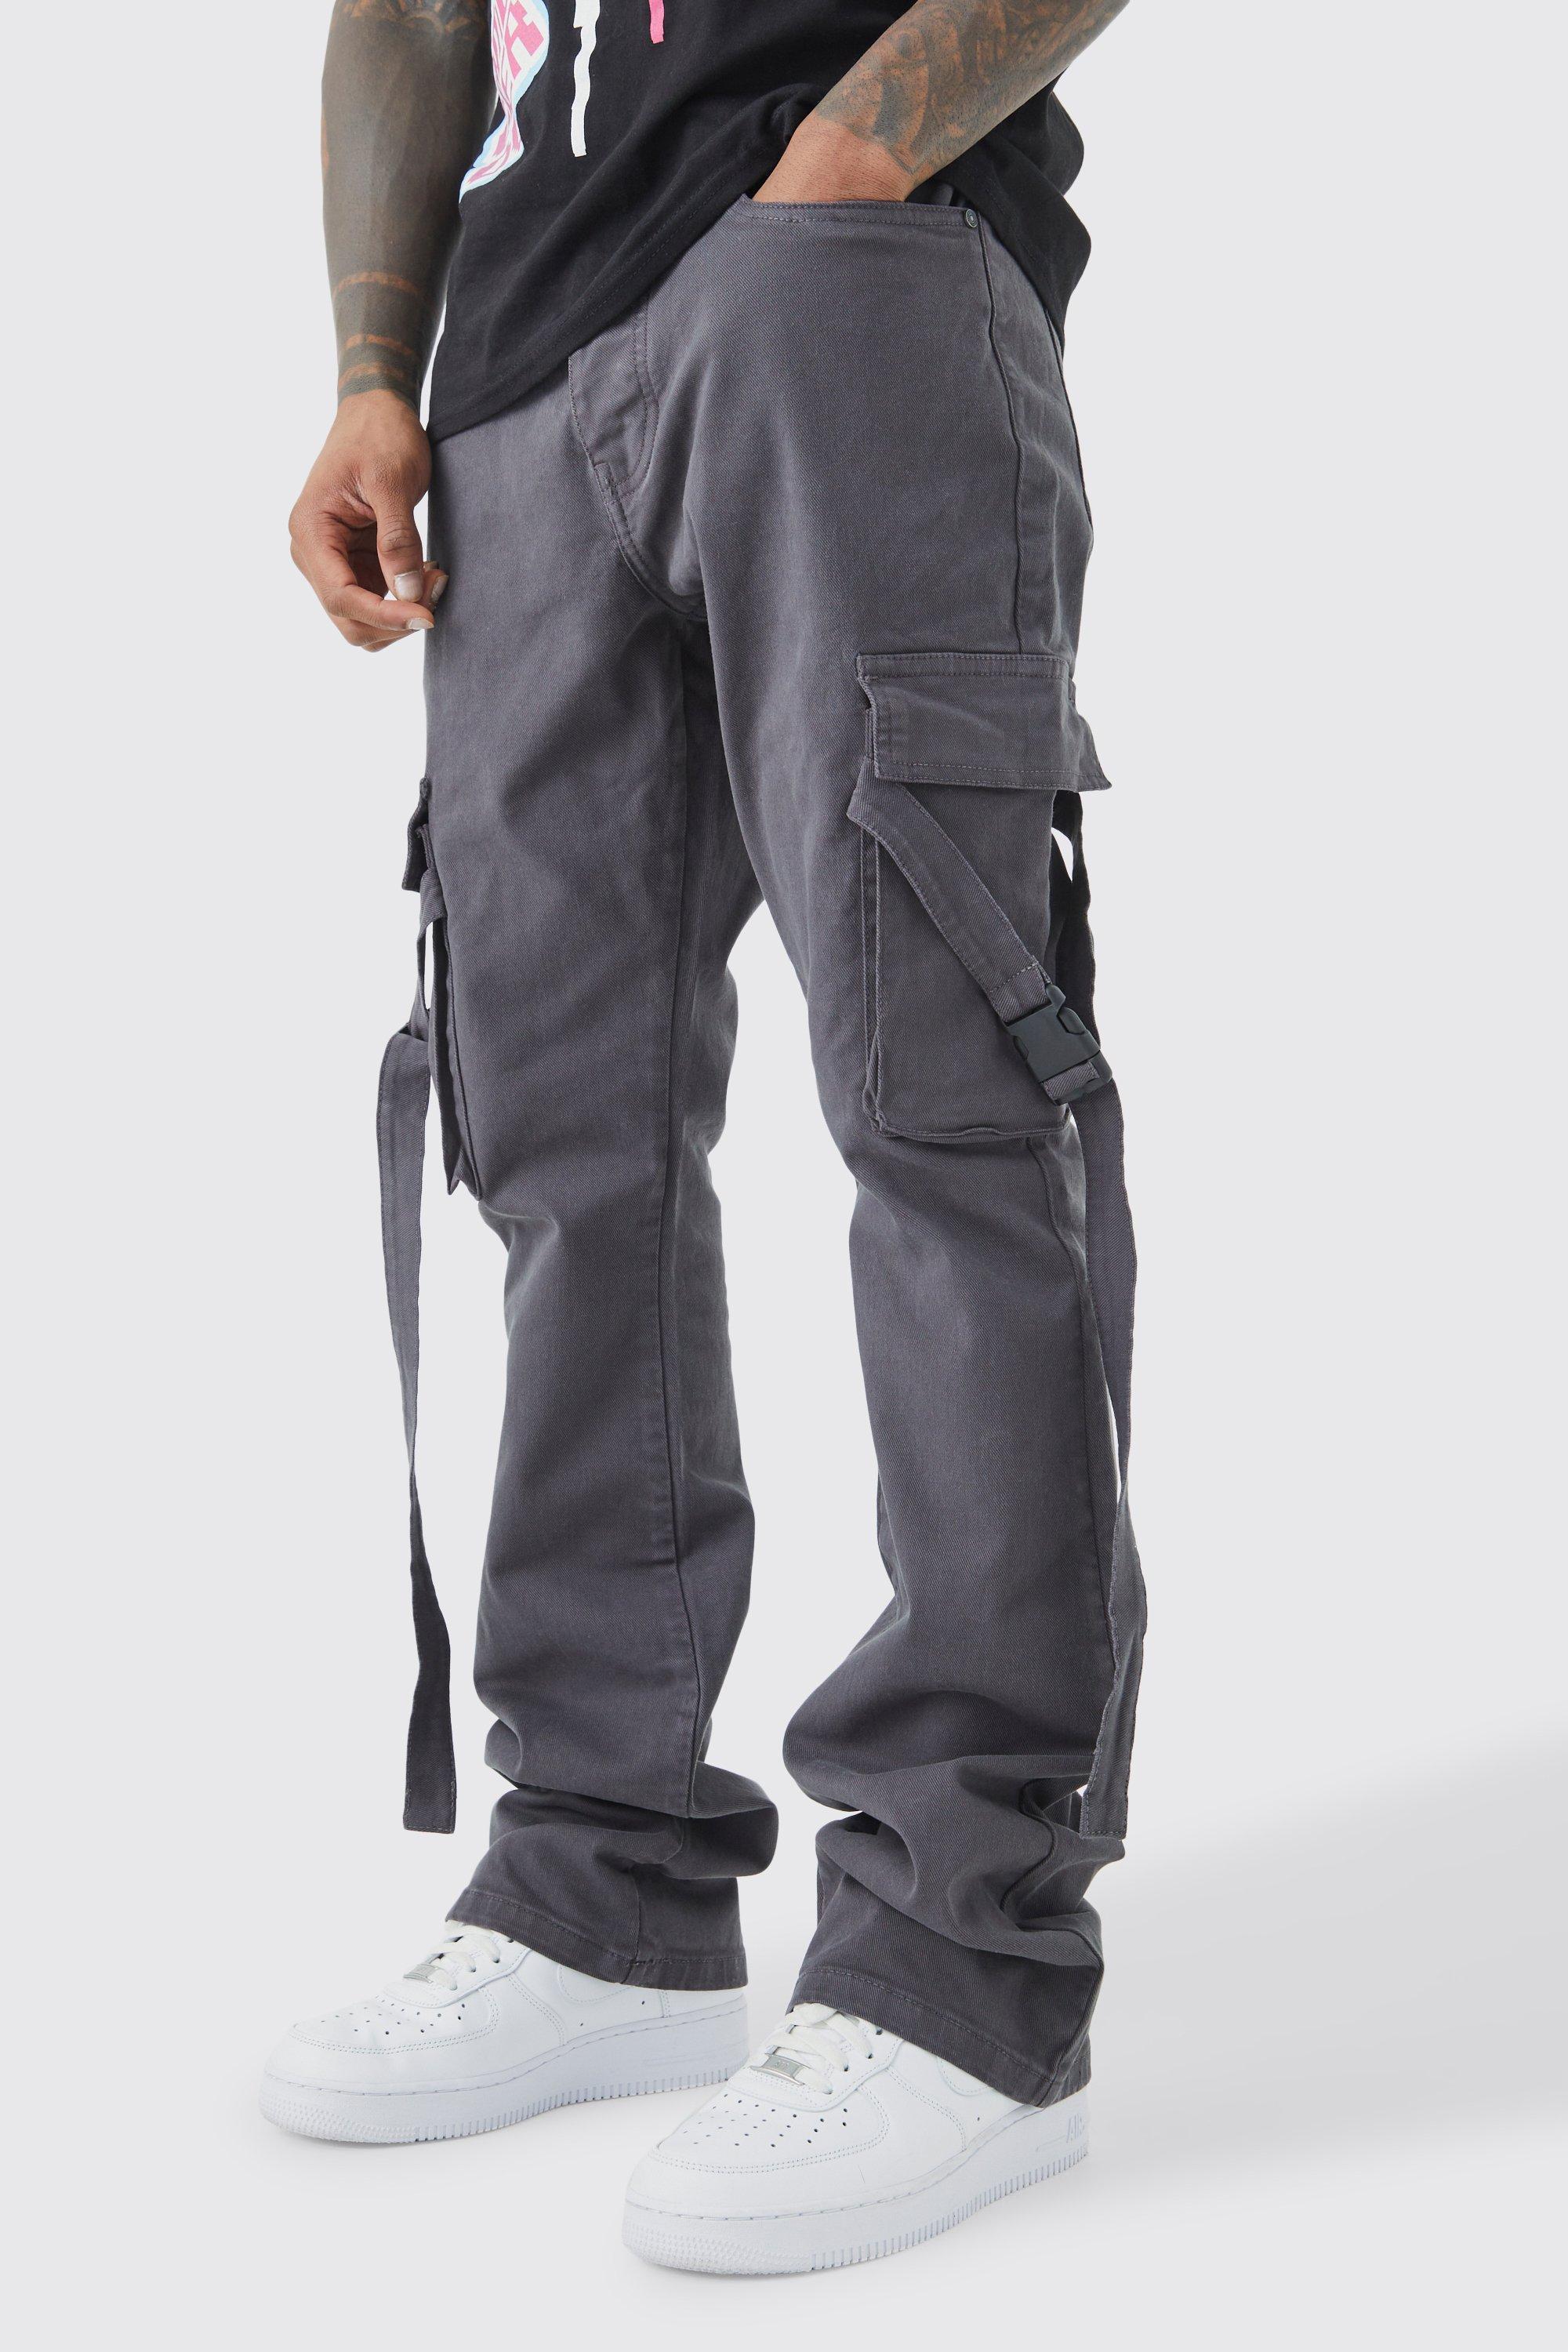 Image of Pantaloni Cargo Slim Fit con vita fissa, pieghe sul fondo e spalline svasate, Grigio